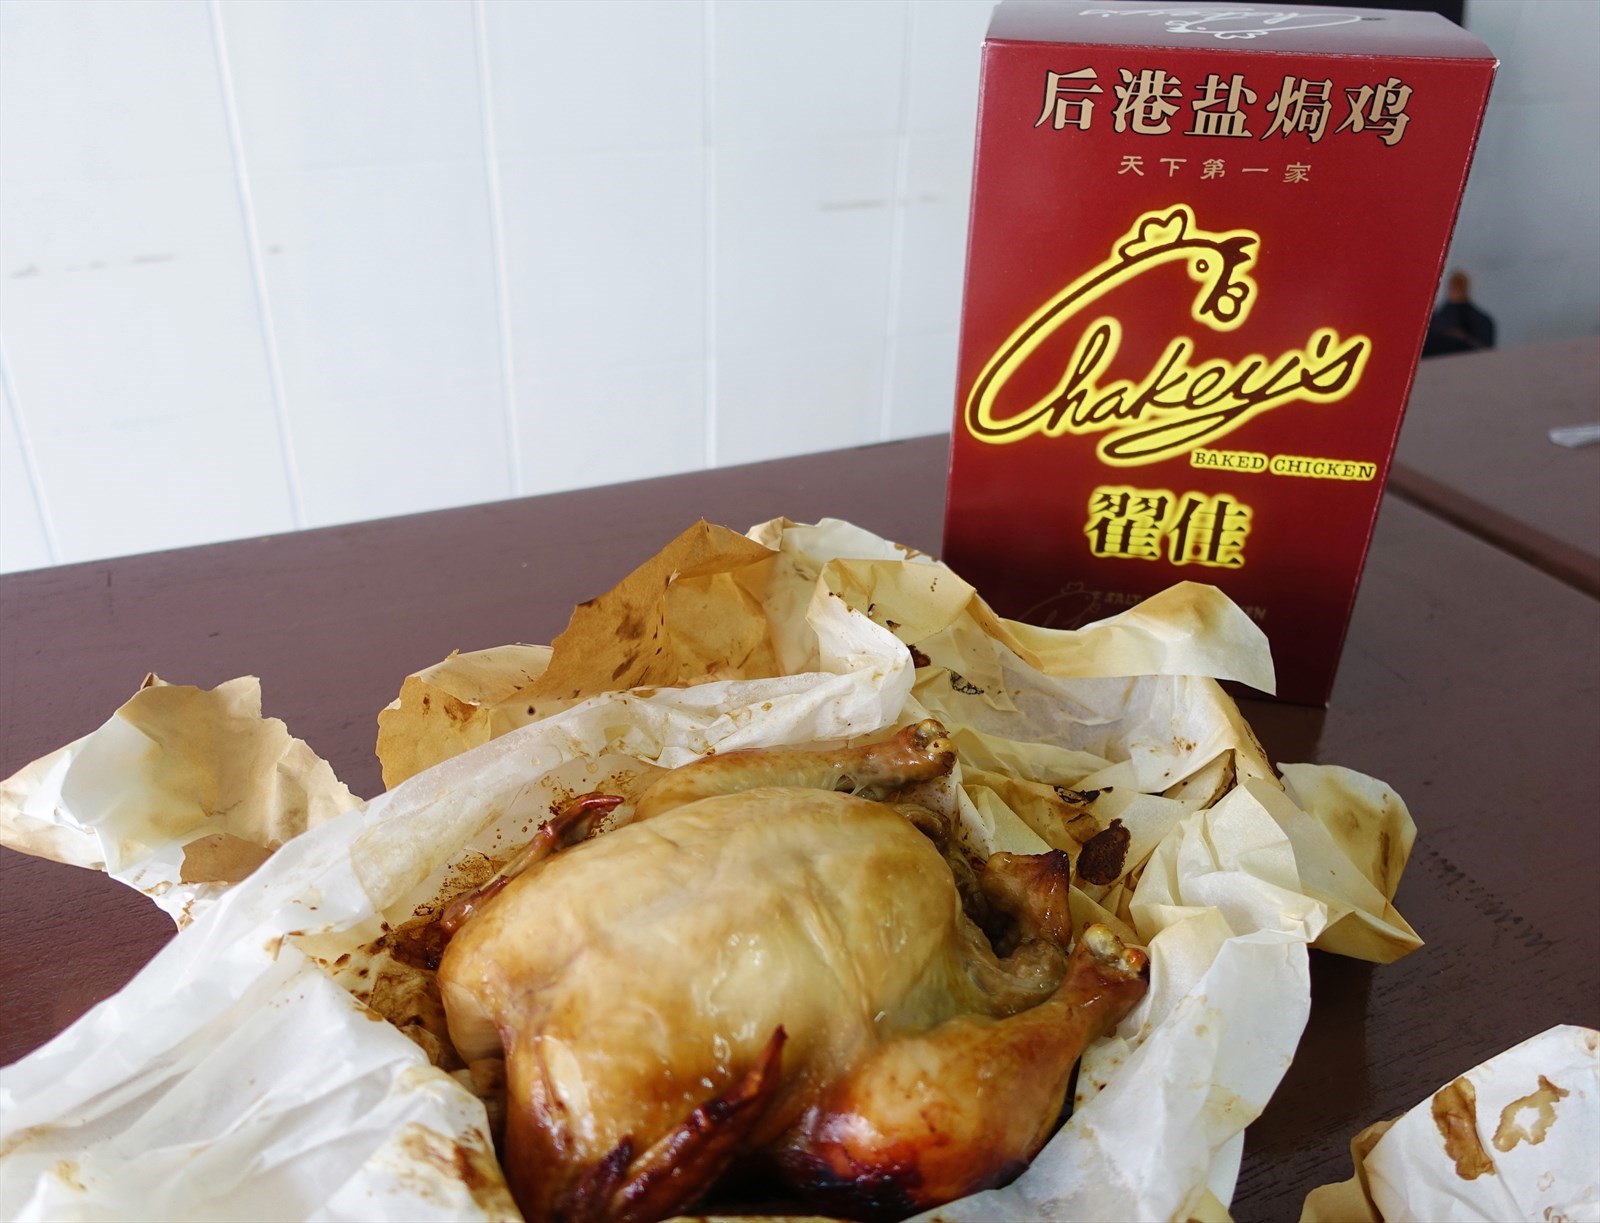 Chakey's Serangoon Salt Baked Chicken